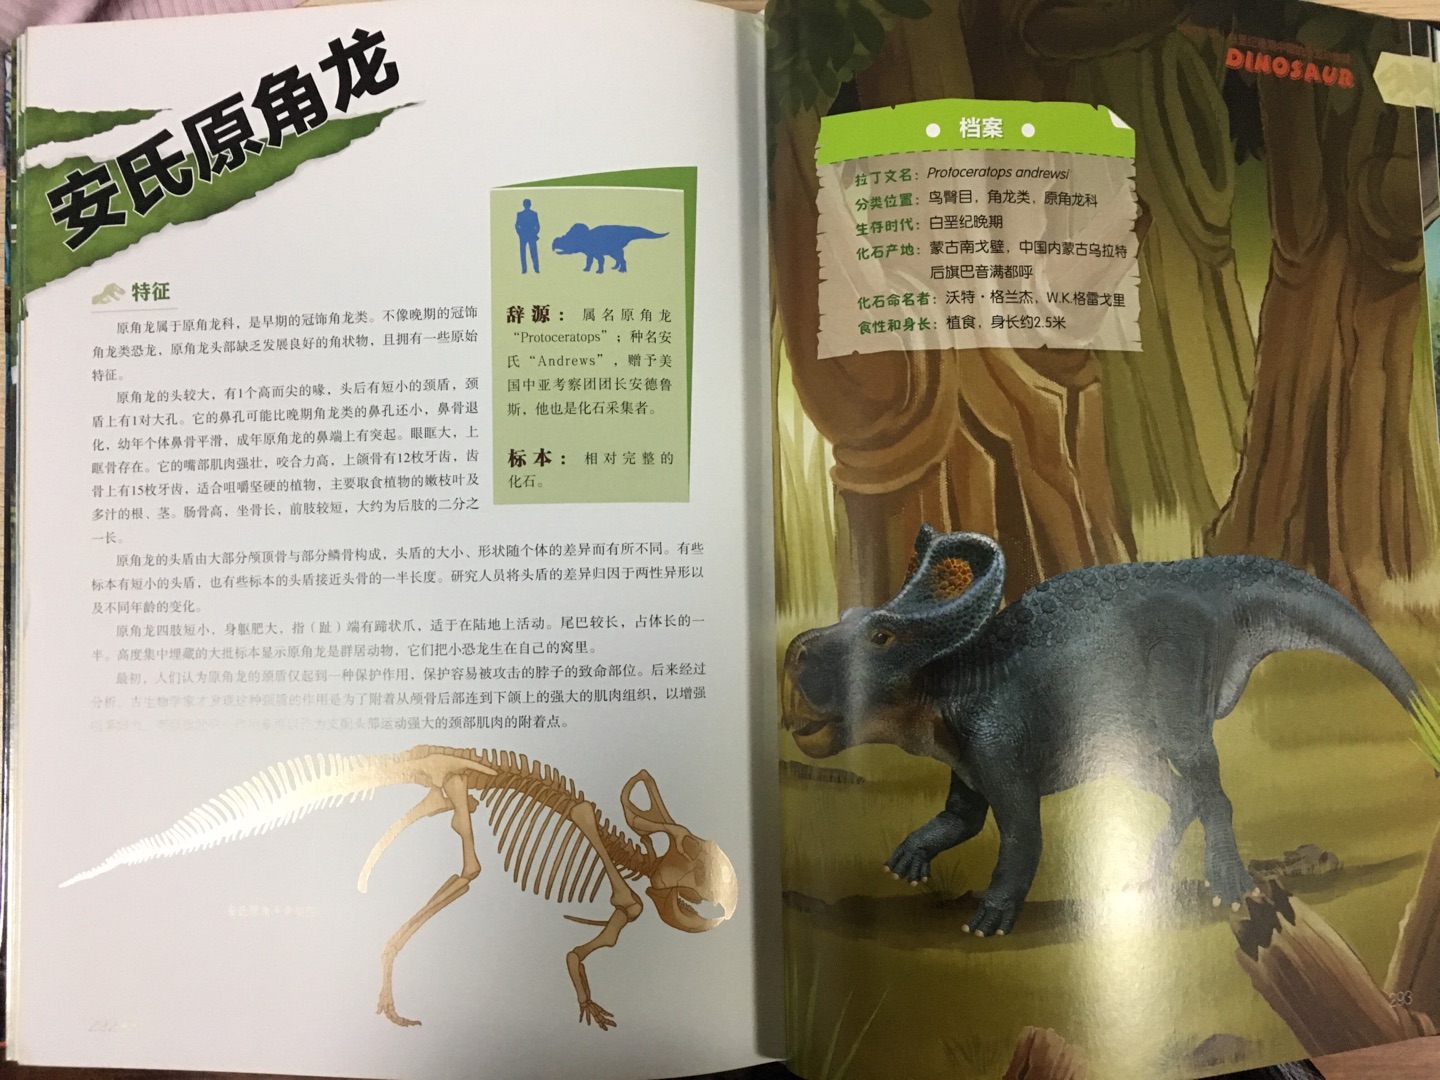 自从给怡宝读科普类的图书开始，孩子就喜欢上了有关恐龙的书，日常“十万个为什么”也有很多关于恐龙话题的，最近得到一本新书《中国恐龙百科全书》，这本书以232幅高清手绘大图描绘了生活在这片原始大地上的恐龙及其他史前动物，从形态、栖息地、捕猎、进化等多个角度描述了这些史前巨兽的外形特征和生活场景。更全更专业更新颖的角度给孩子介绍，推荐指数:??????????(账号:木口同桌)